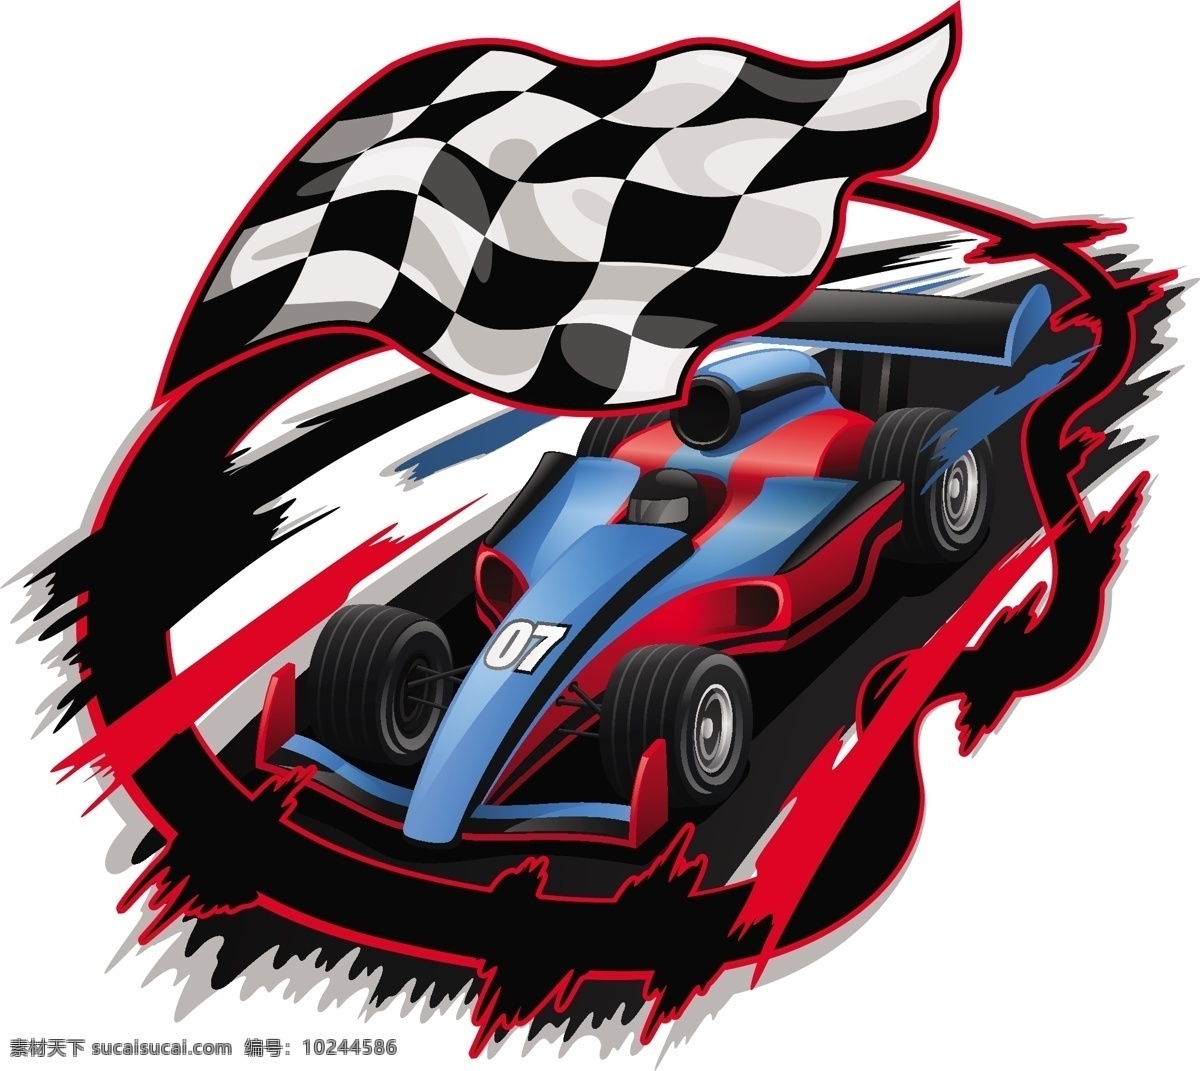 赛车 黑白格子旗 极品飞车 赛车游戏 跑车 动感 运动 格子 格纹 速度 竞技 黑白 红色 蓝色